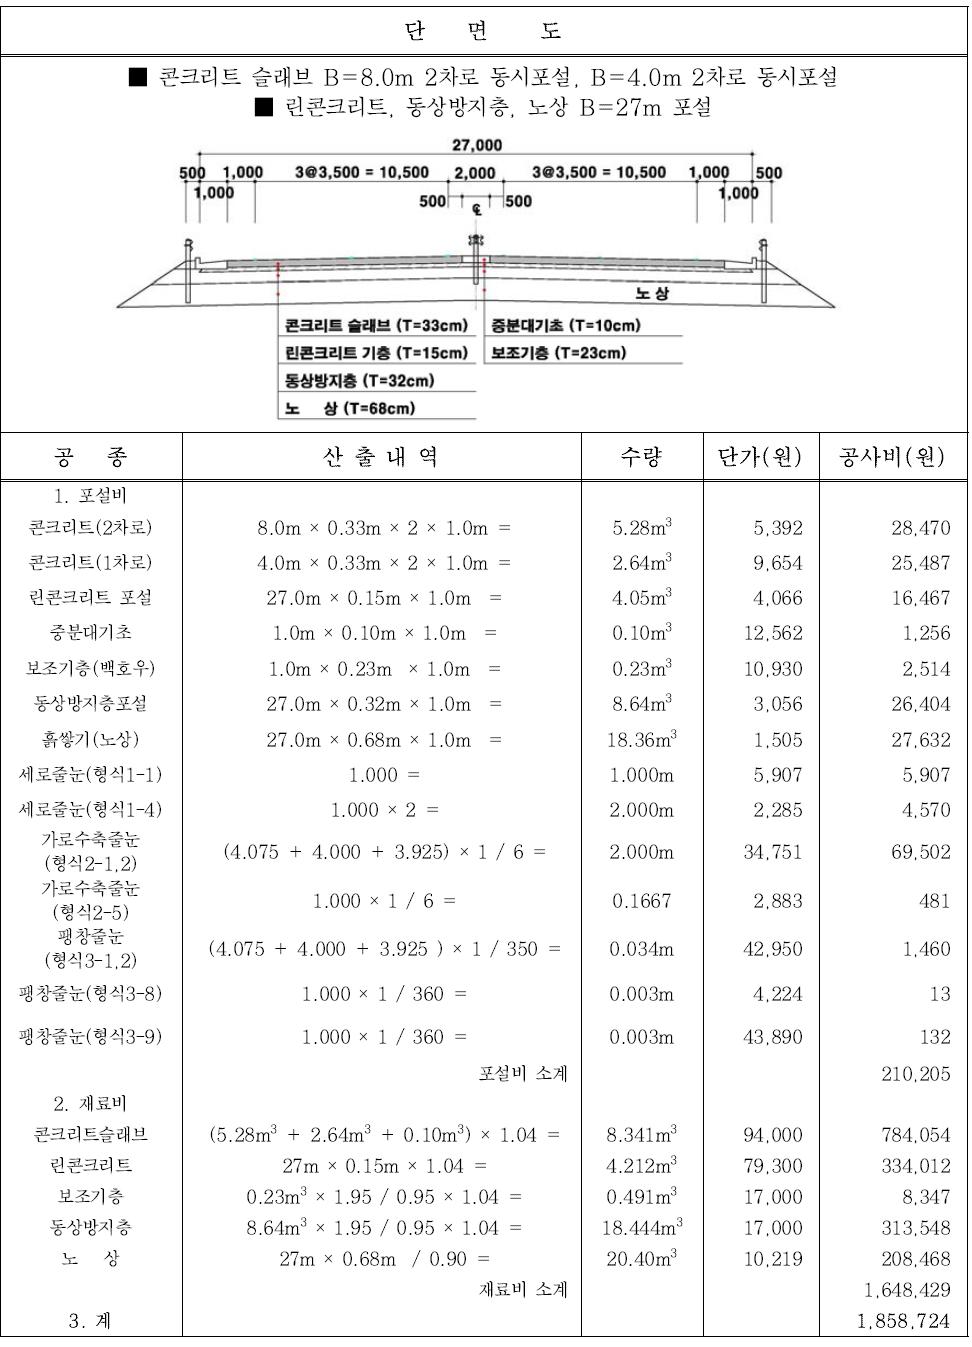 북부지역(서울 북부)의 시멘트 콘크리트포장 6차로 공사비 산출 (1.0m당)